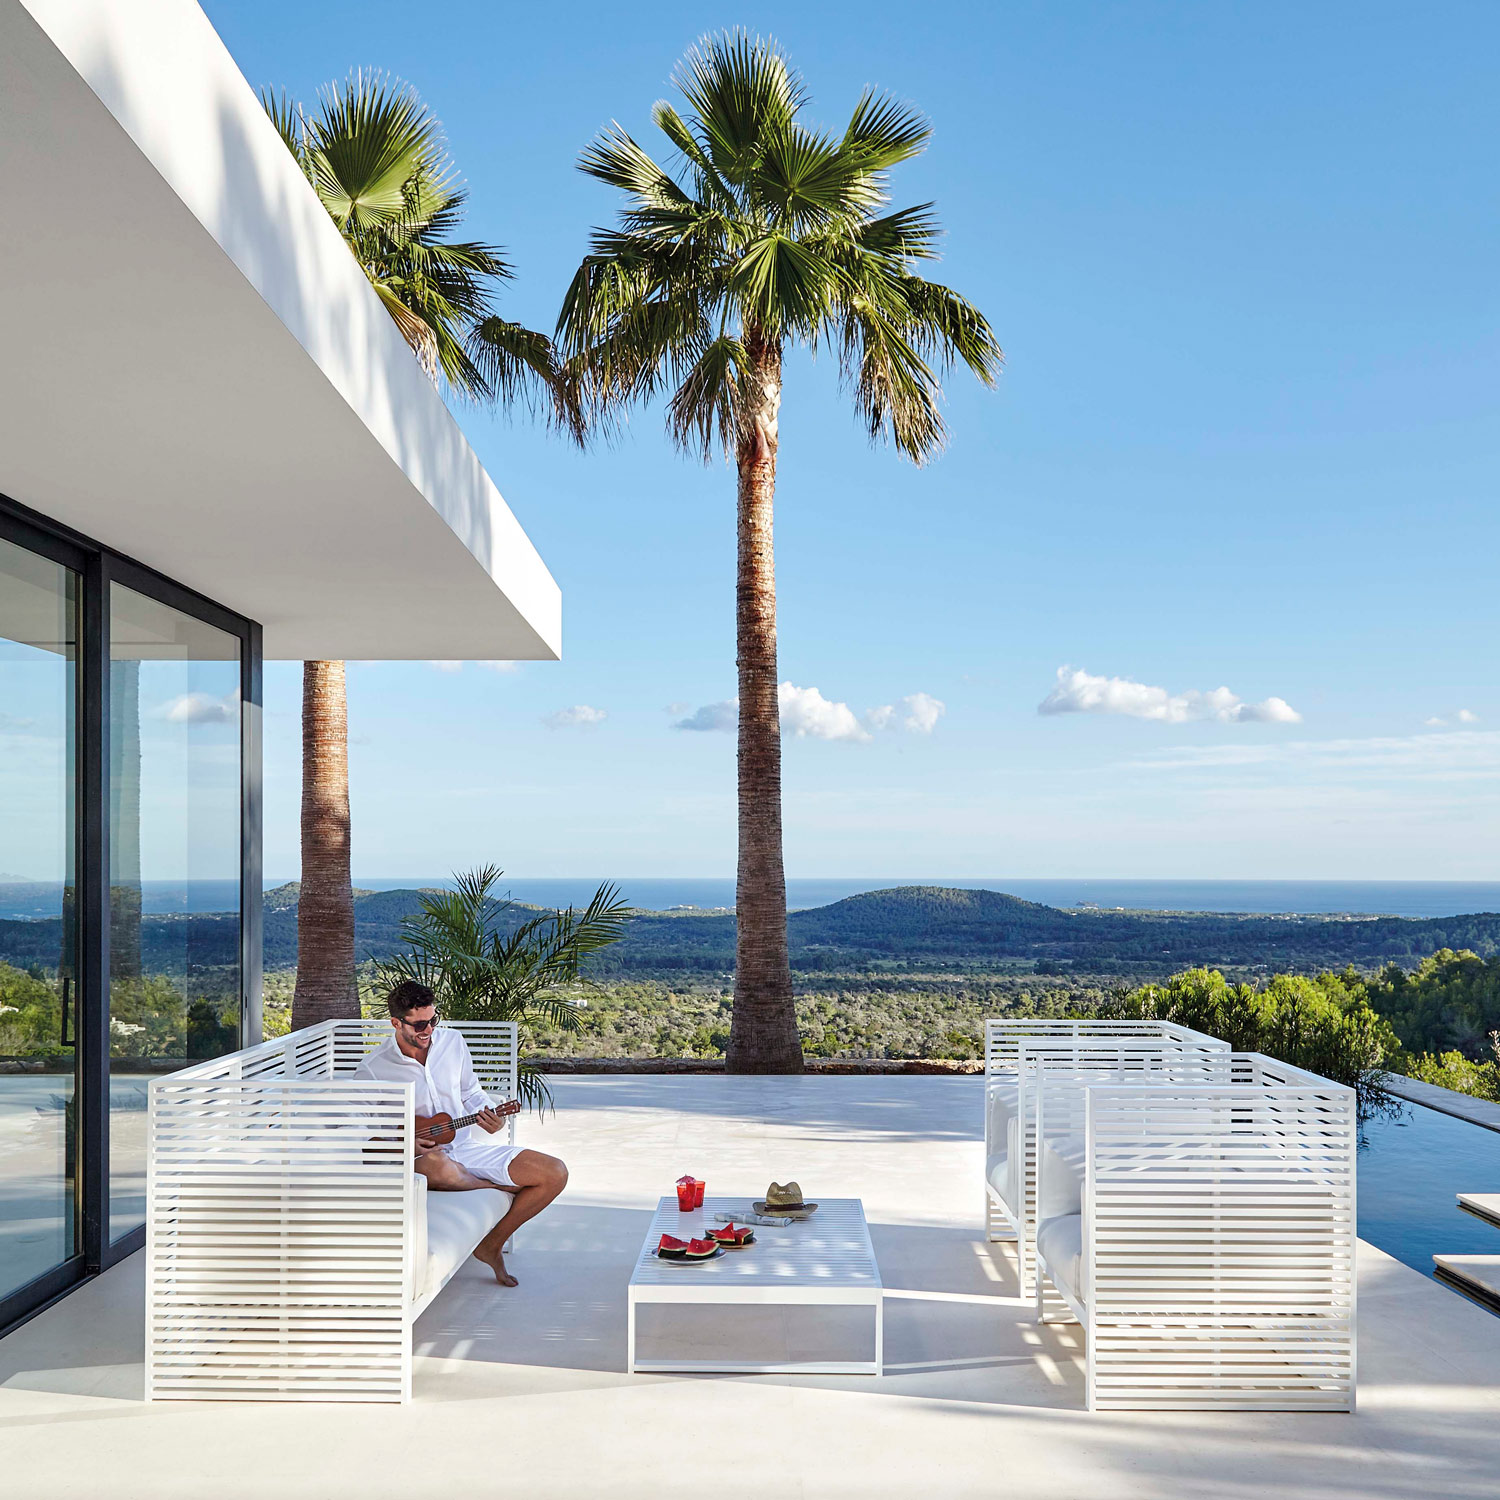 DNA luksuriøse møbler skaber det unikke loungeområde med sofaer og lænestole fra Gitz Design og Gandia Blasco